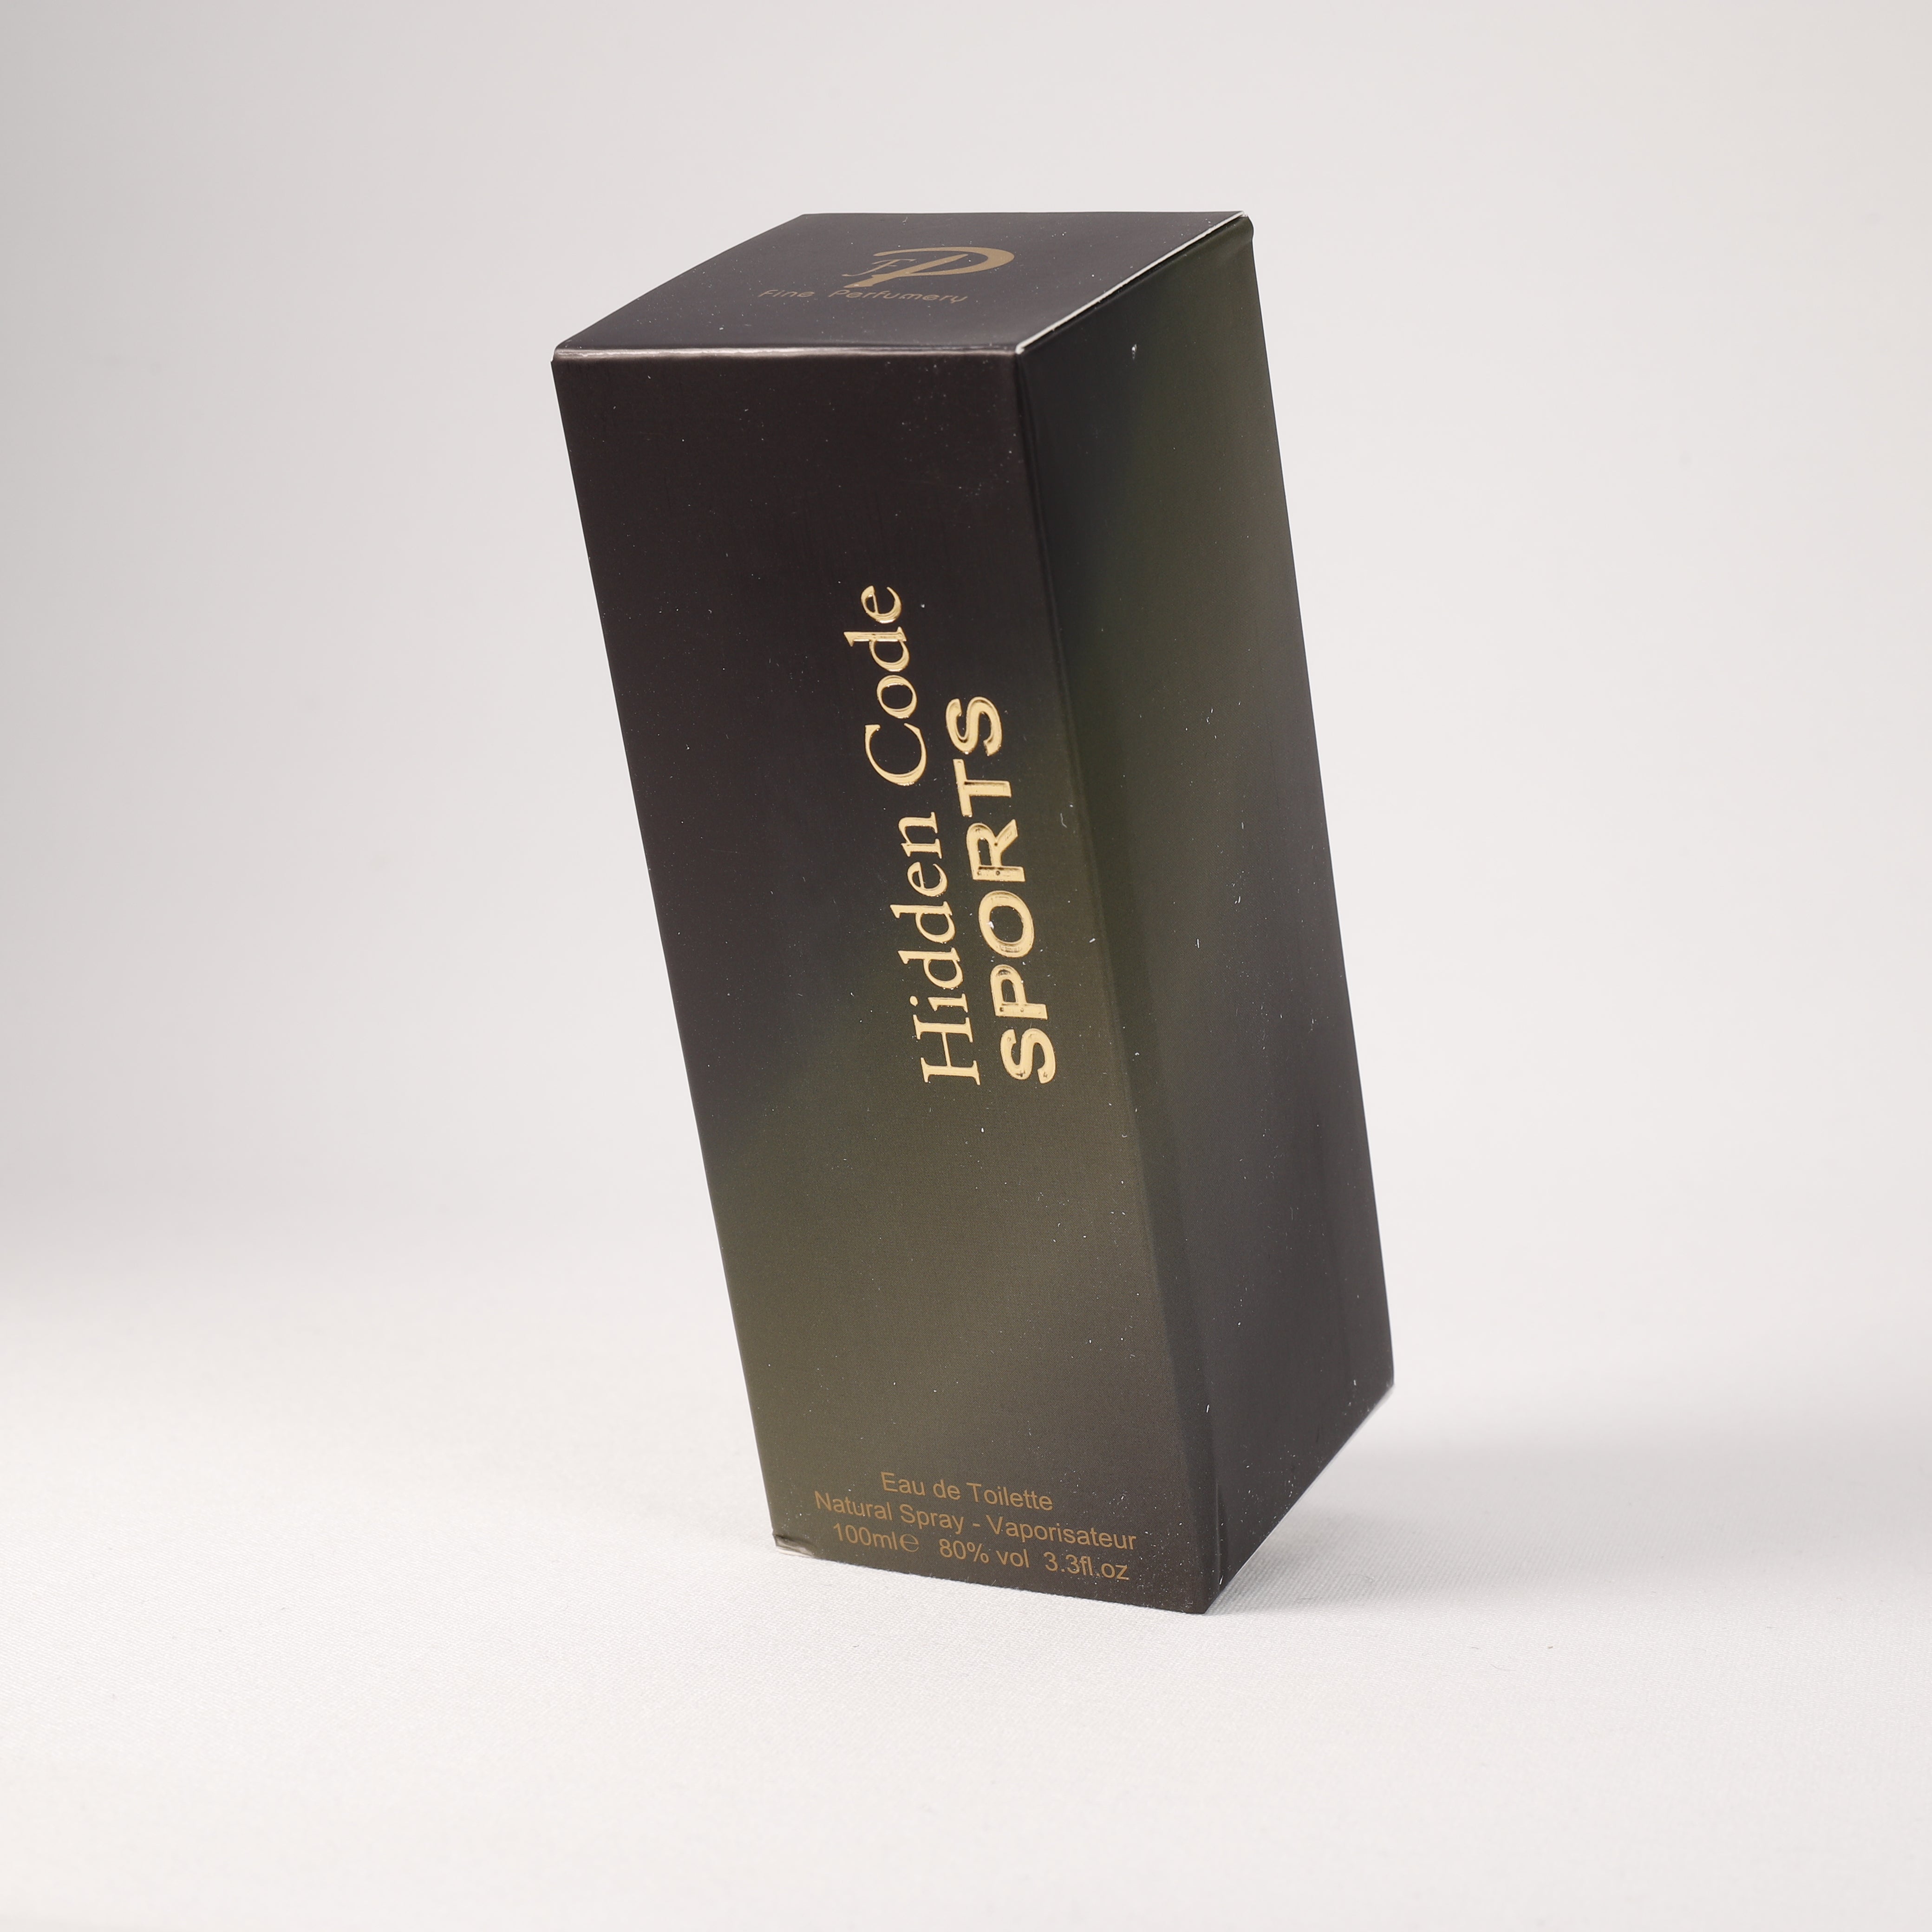 Hidden Code Sports Gold für Herren, Vaporizer mit natürlichem Spray, 100 ml, Duft, Parfüm, NEU OVP